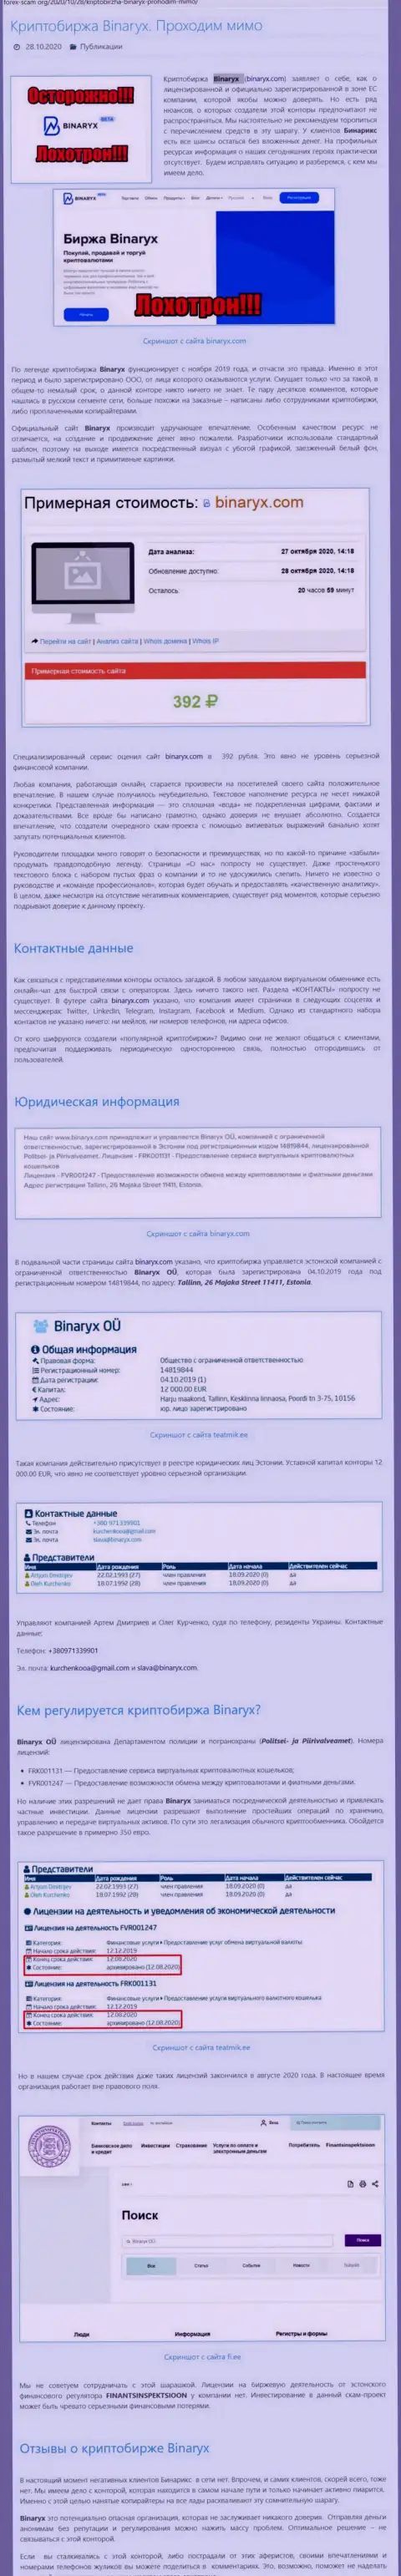 Binaryx Com - это МОШЕННИКИ !!! Кража денежных средств гарантируют (обзор мошеннических действий конторы)